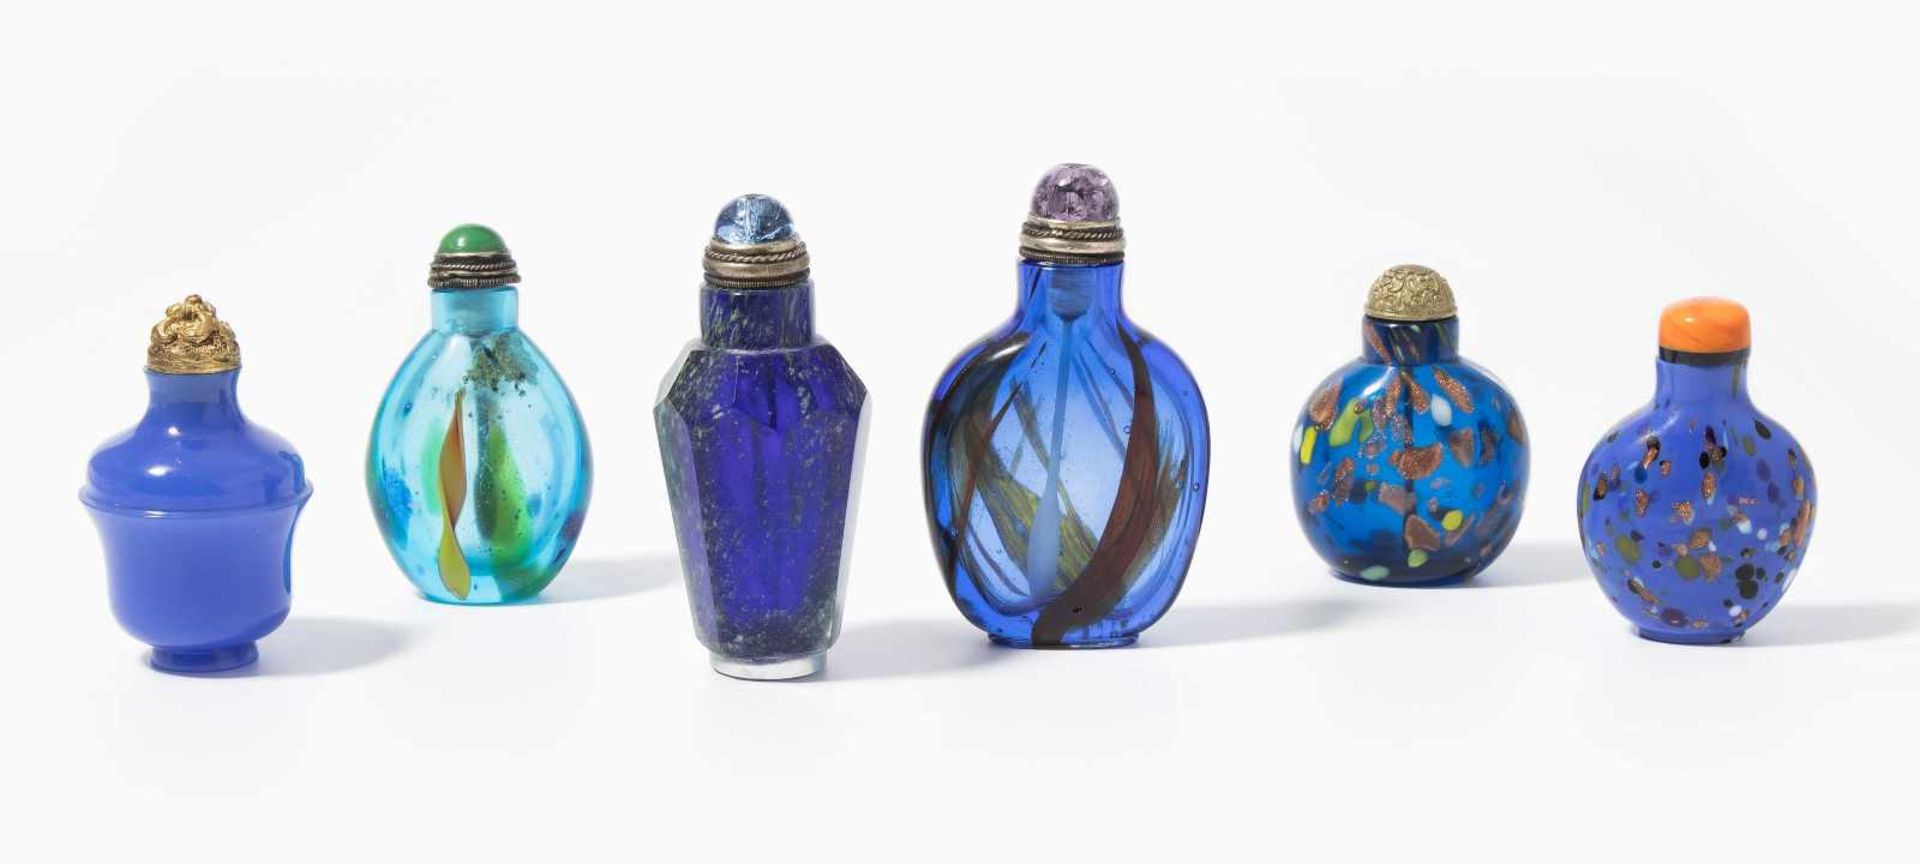 6 Glas Snuff BottlesChina. Opakes und transparentes Glas in verschiedenen Blautönen tlw. bunt